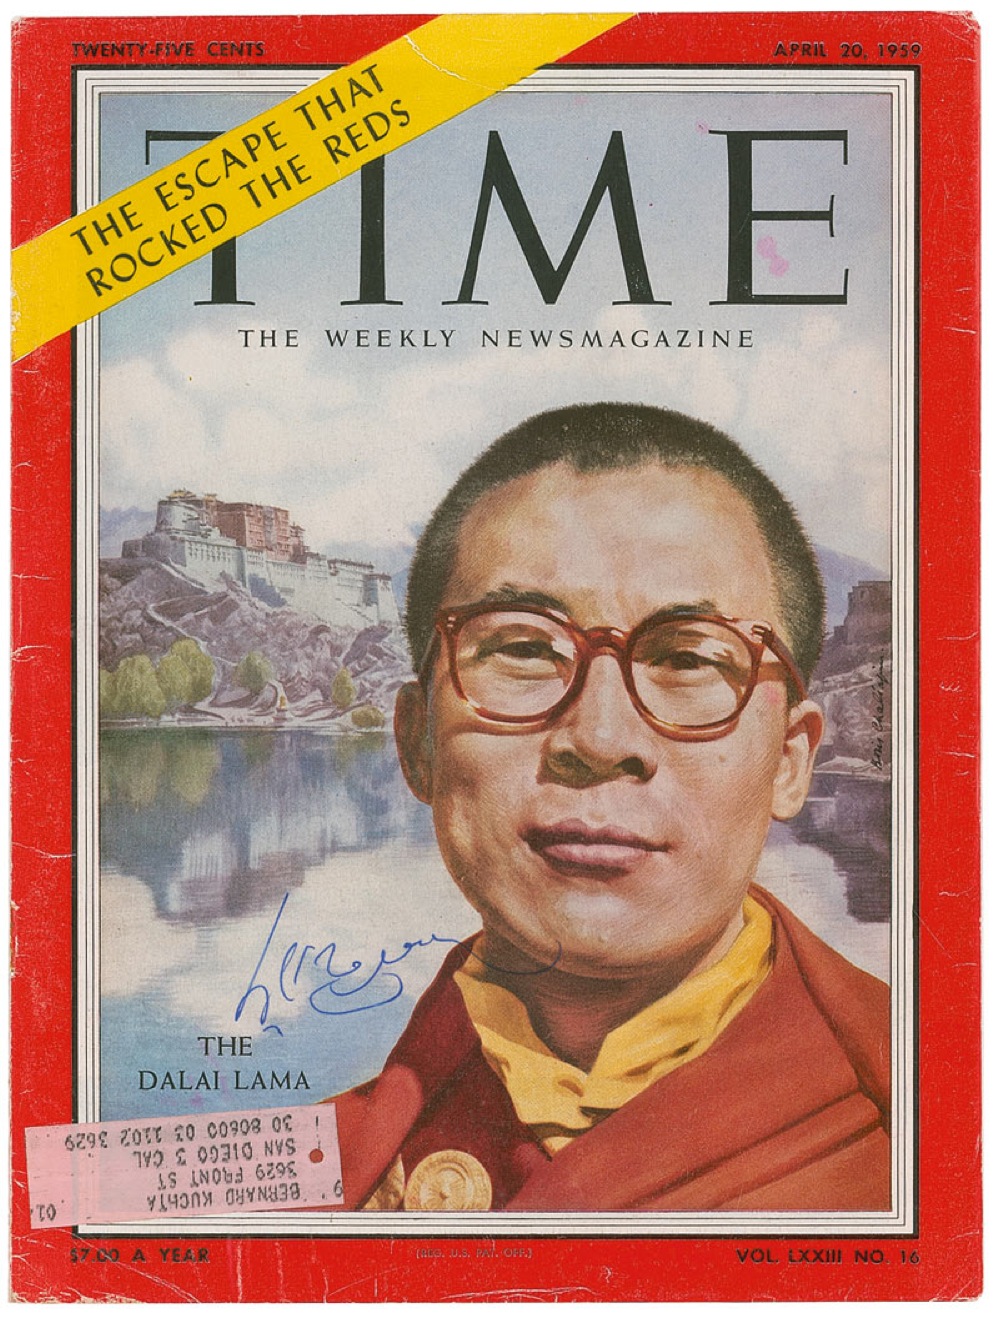 Lot #177 Dalai Lama